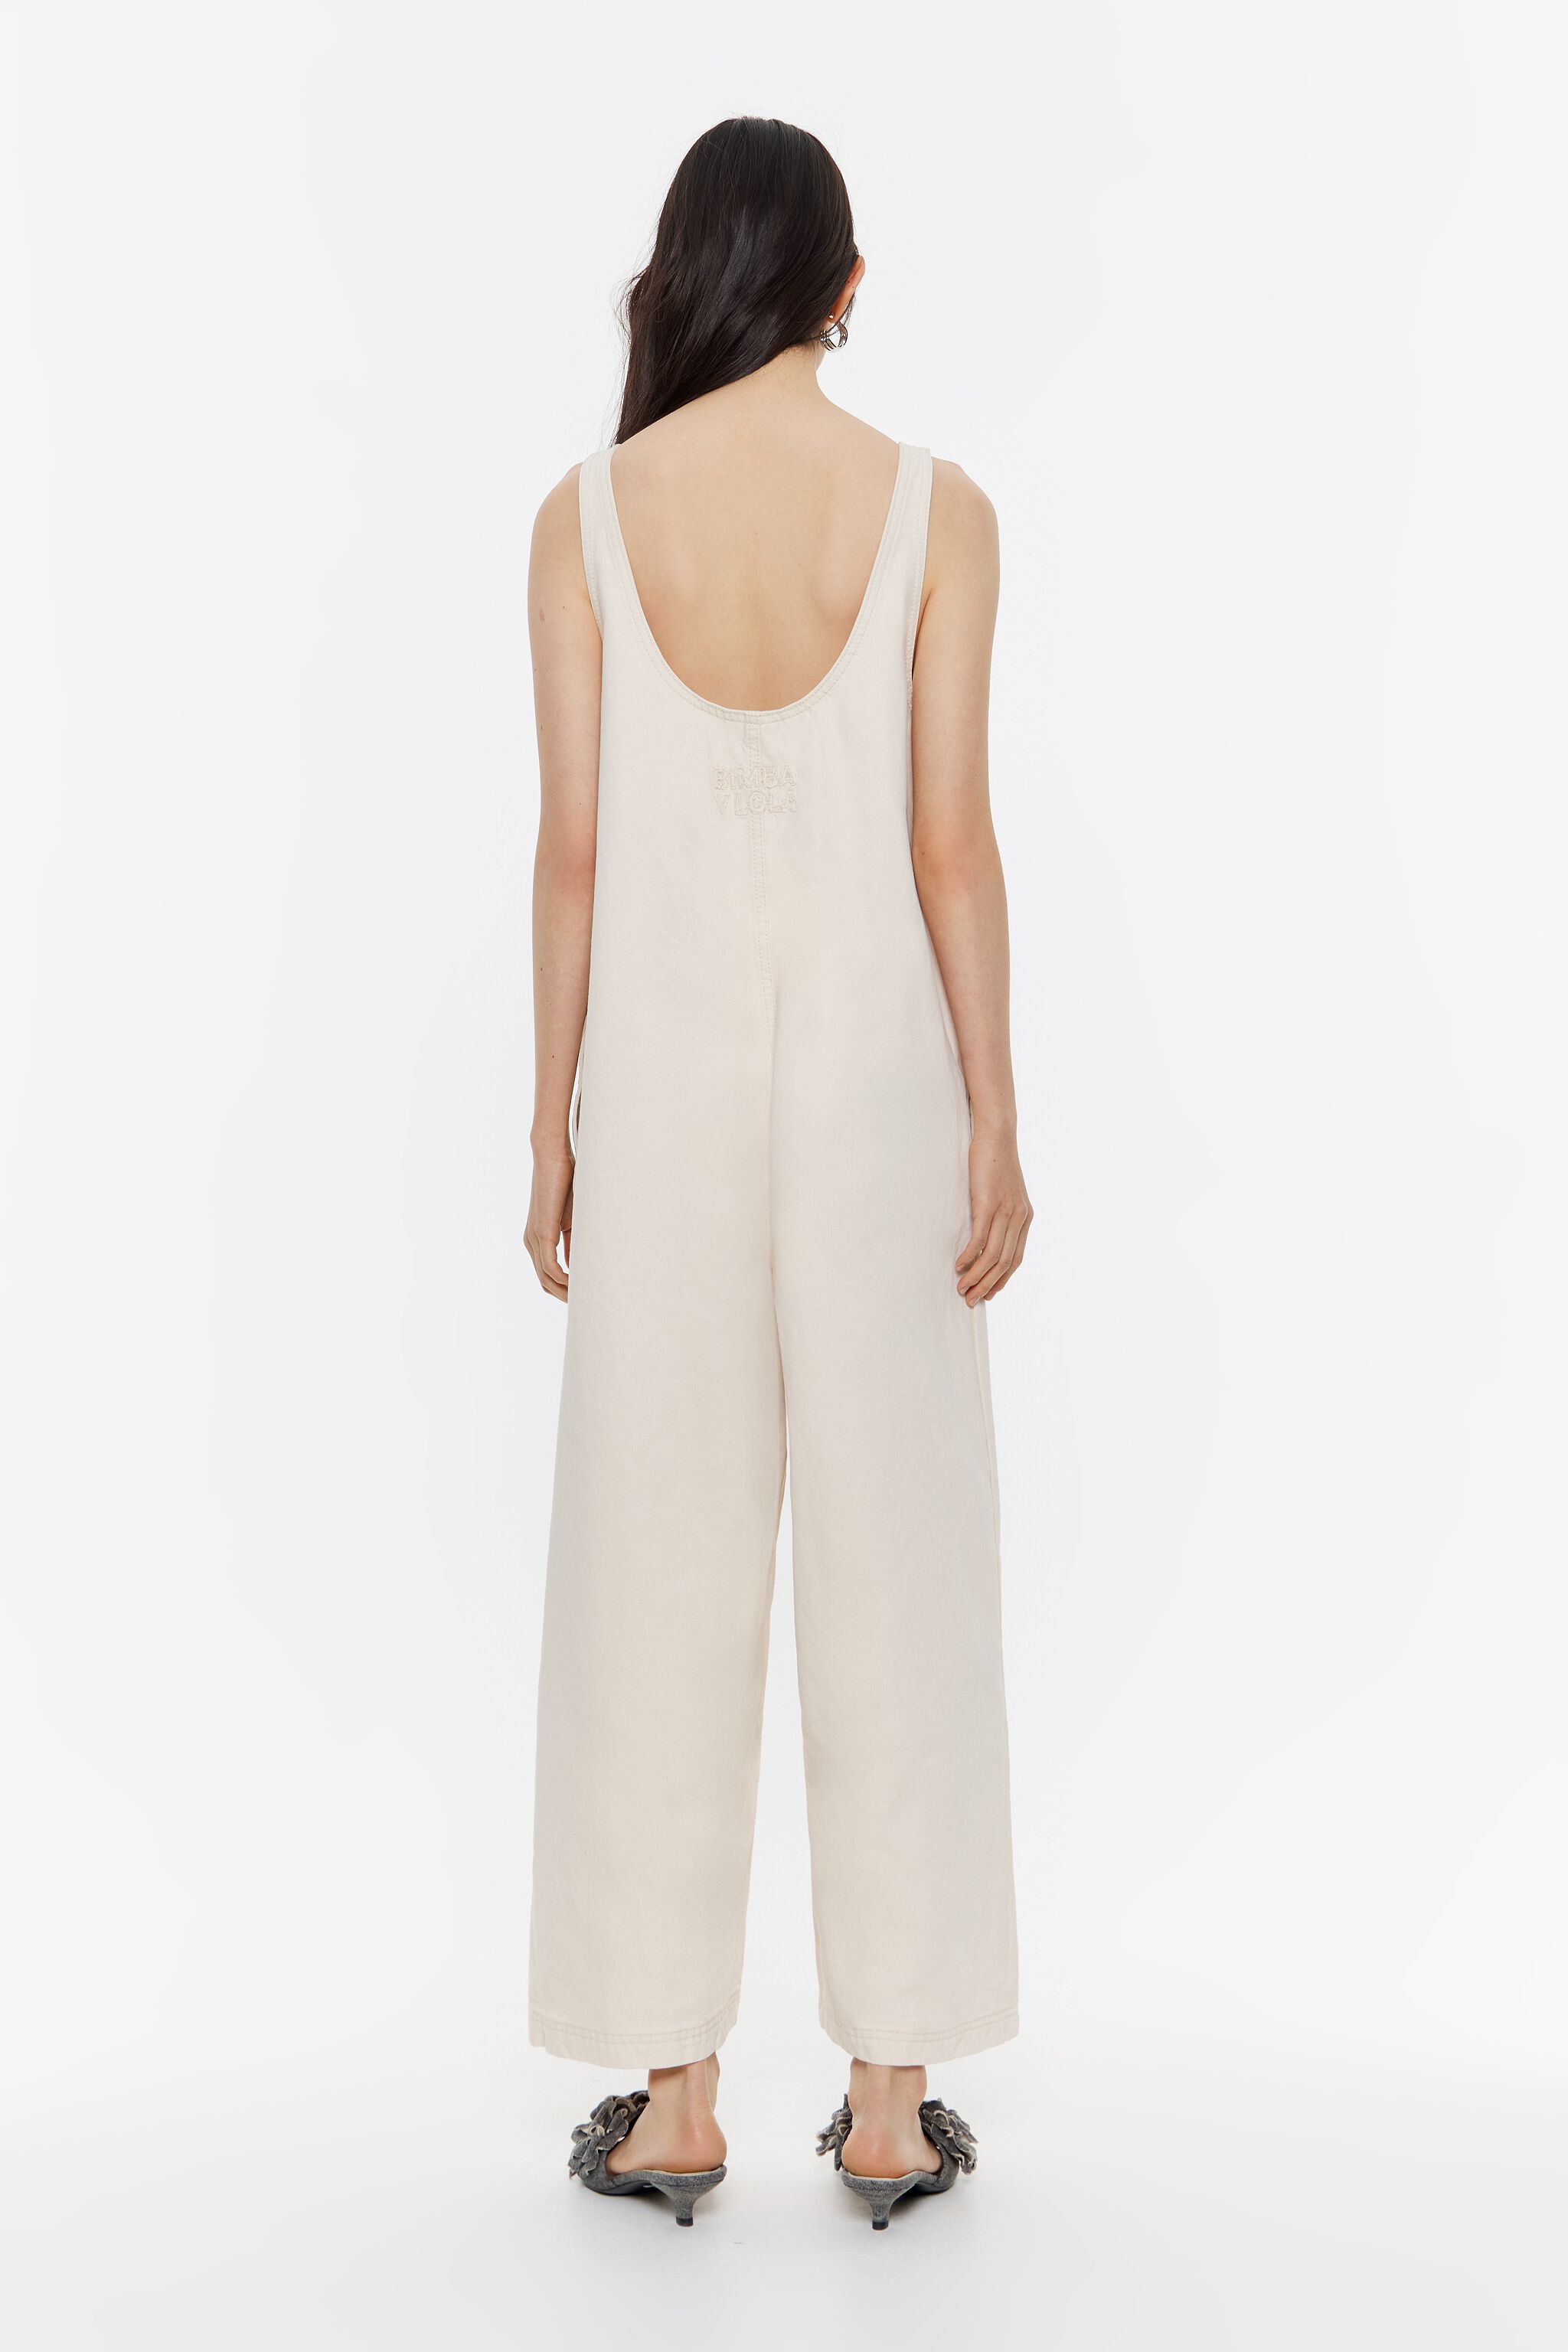 NEW Zara Mica Denim Jumpsuit Long Sleeve Full Length White Size Large | eBay